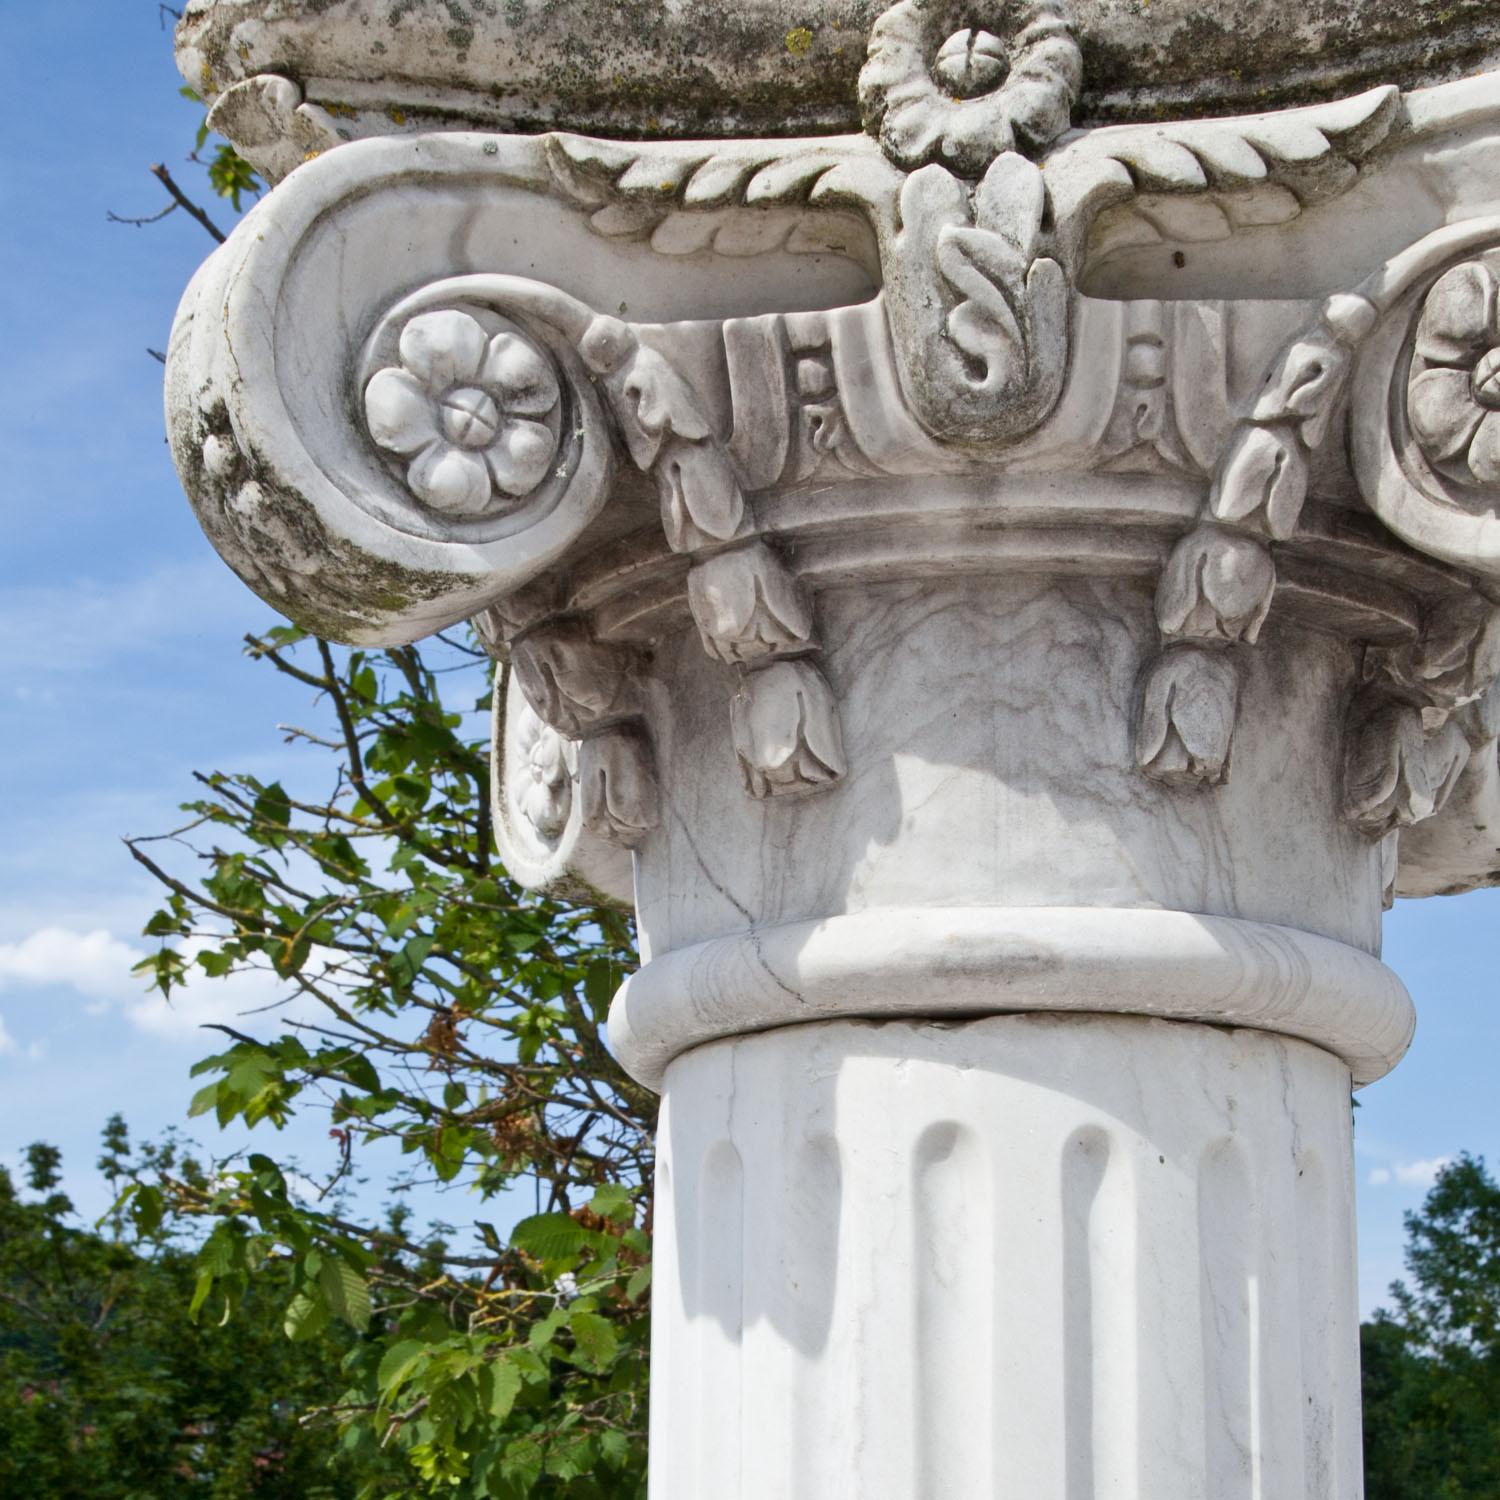 Grande colonne en marbre blanc et patine naturelle vieillie. La base est ronde, le fût est cannelé et le chapiteau est orné de volutes sculptées et de détails floraux.